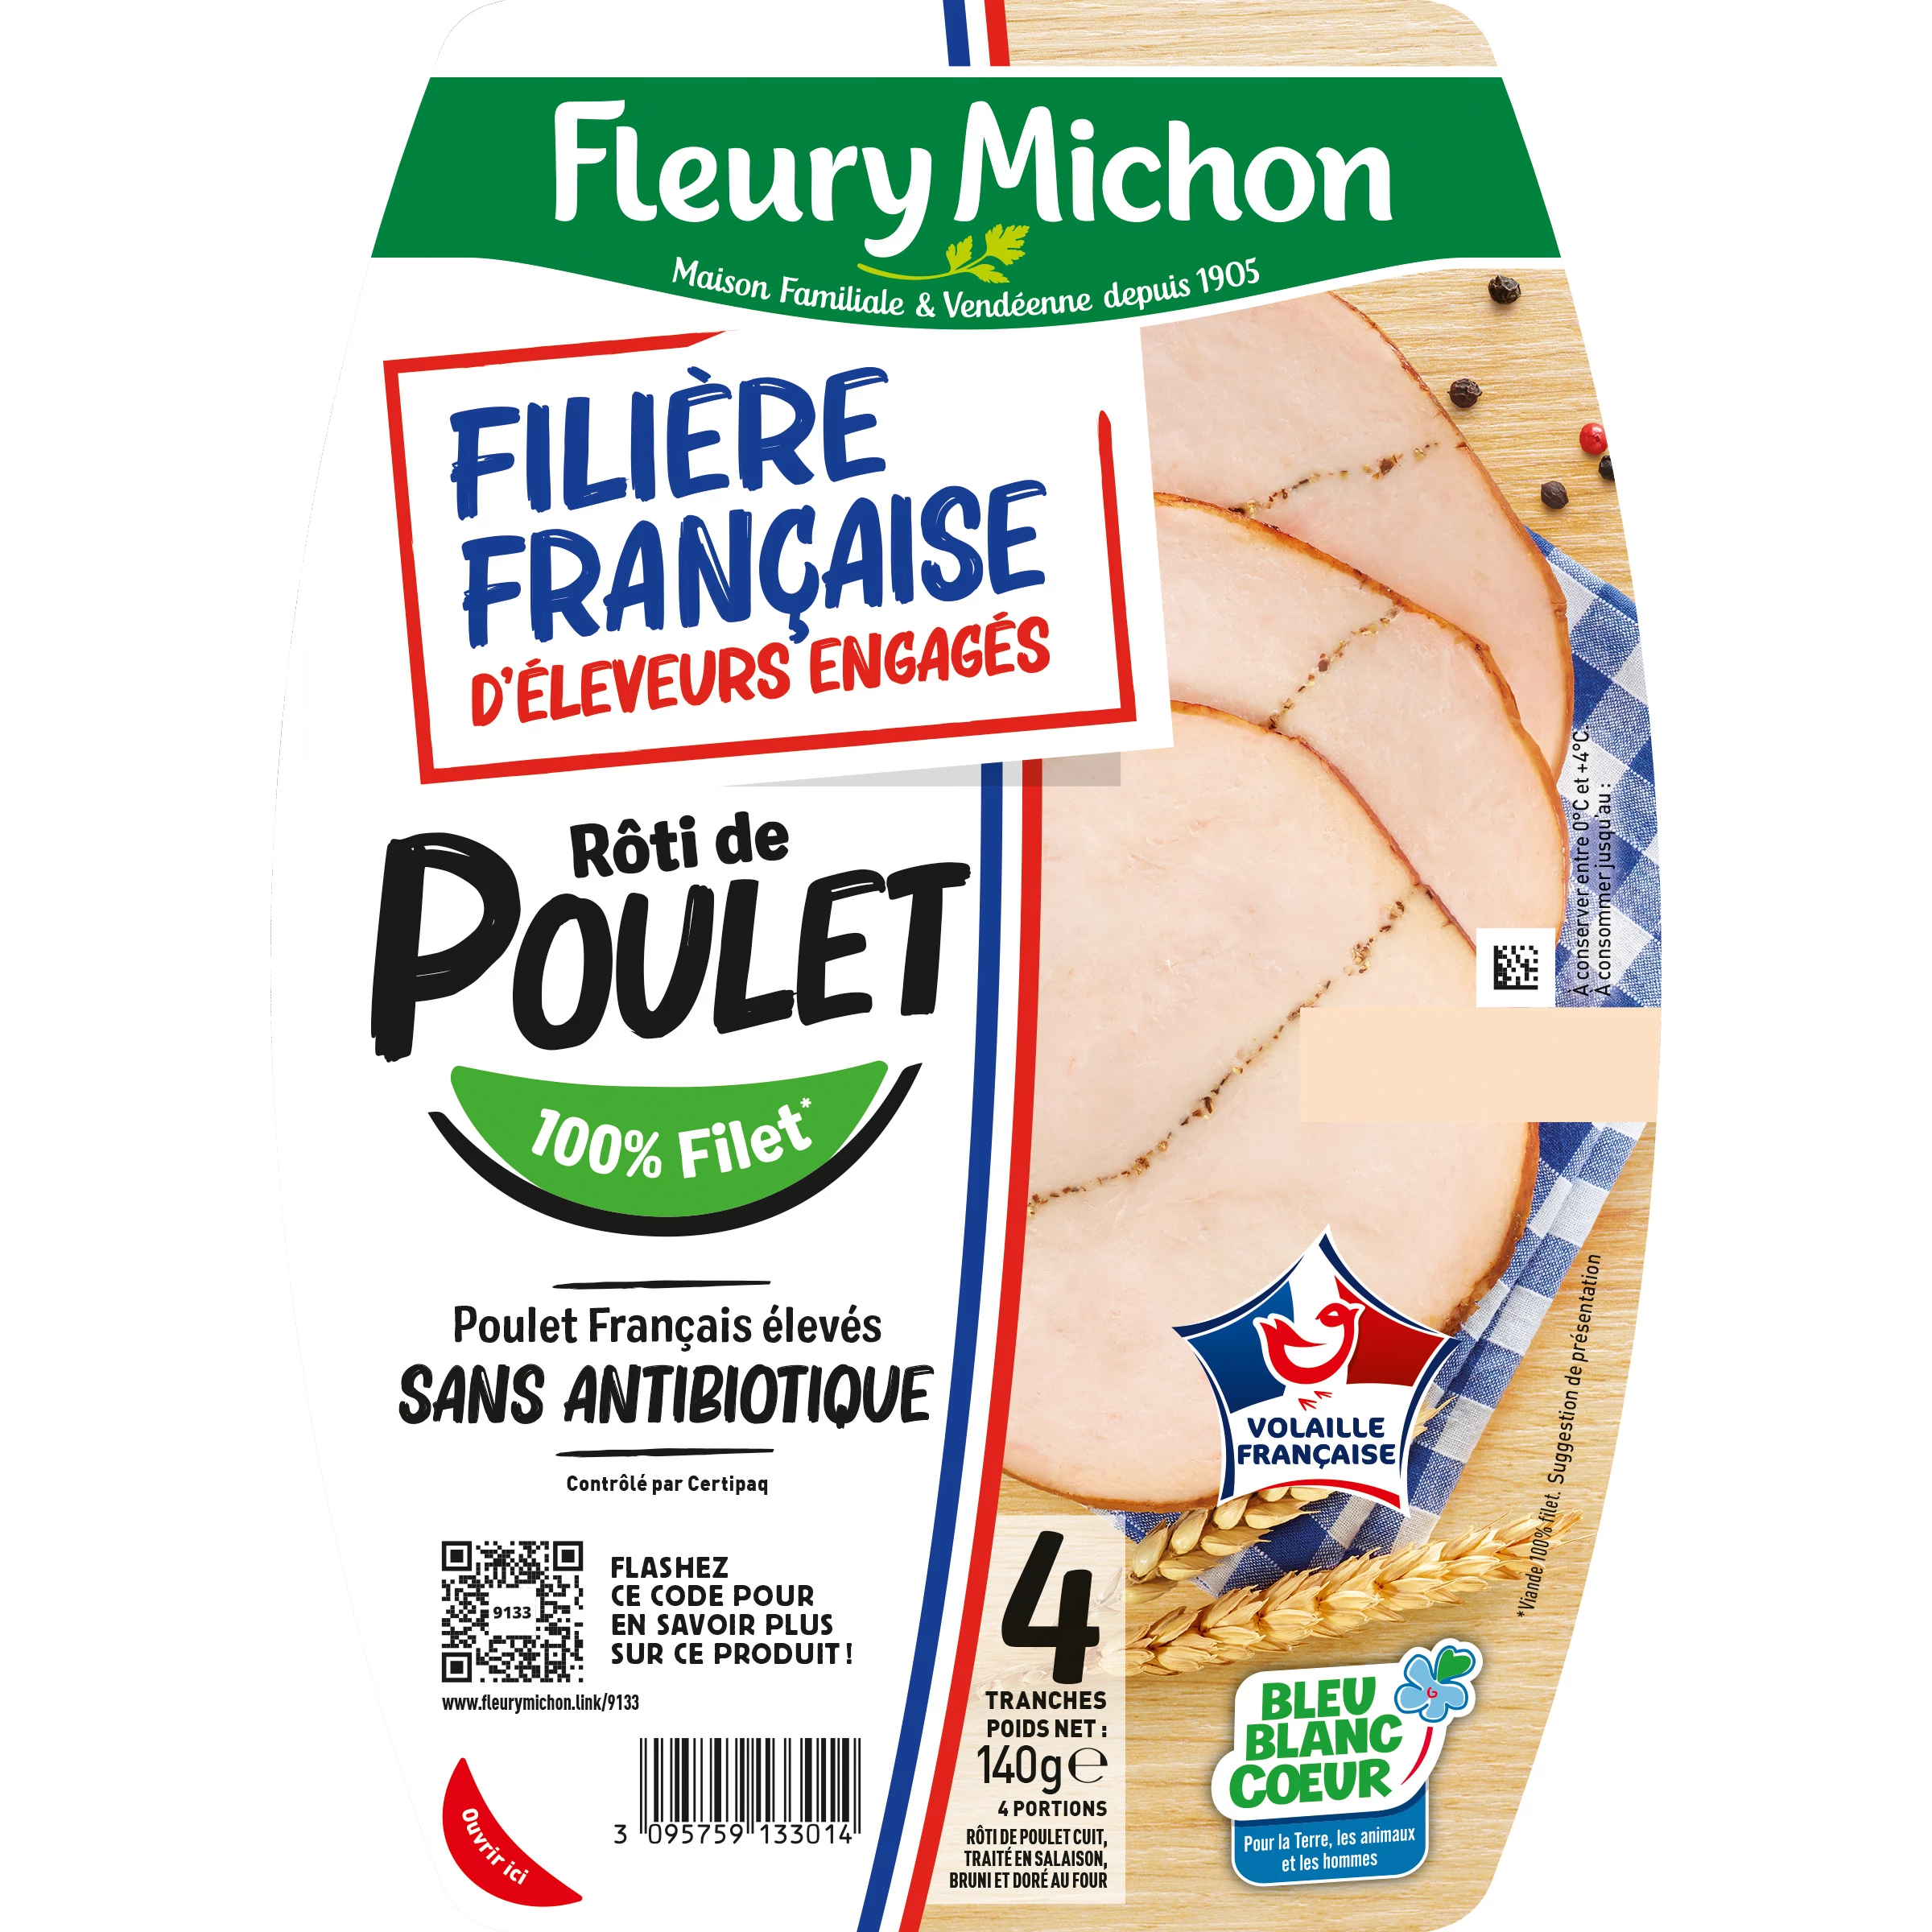 Rôti de poulet cuit 4 tranches 140g - FLEURY MICHON